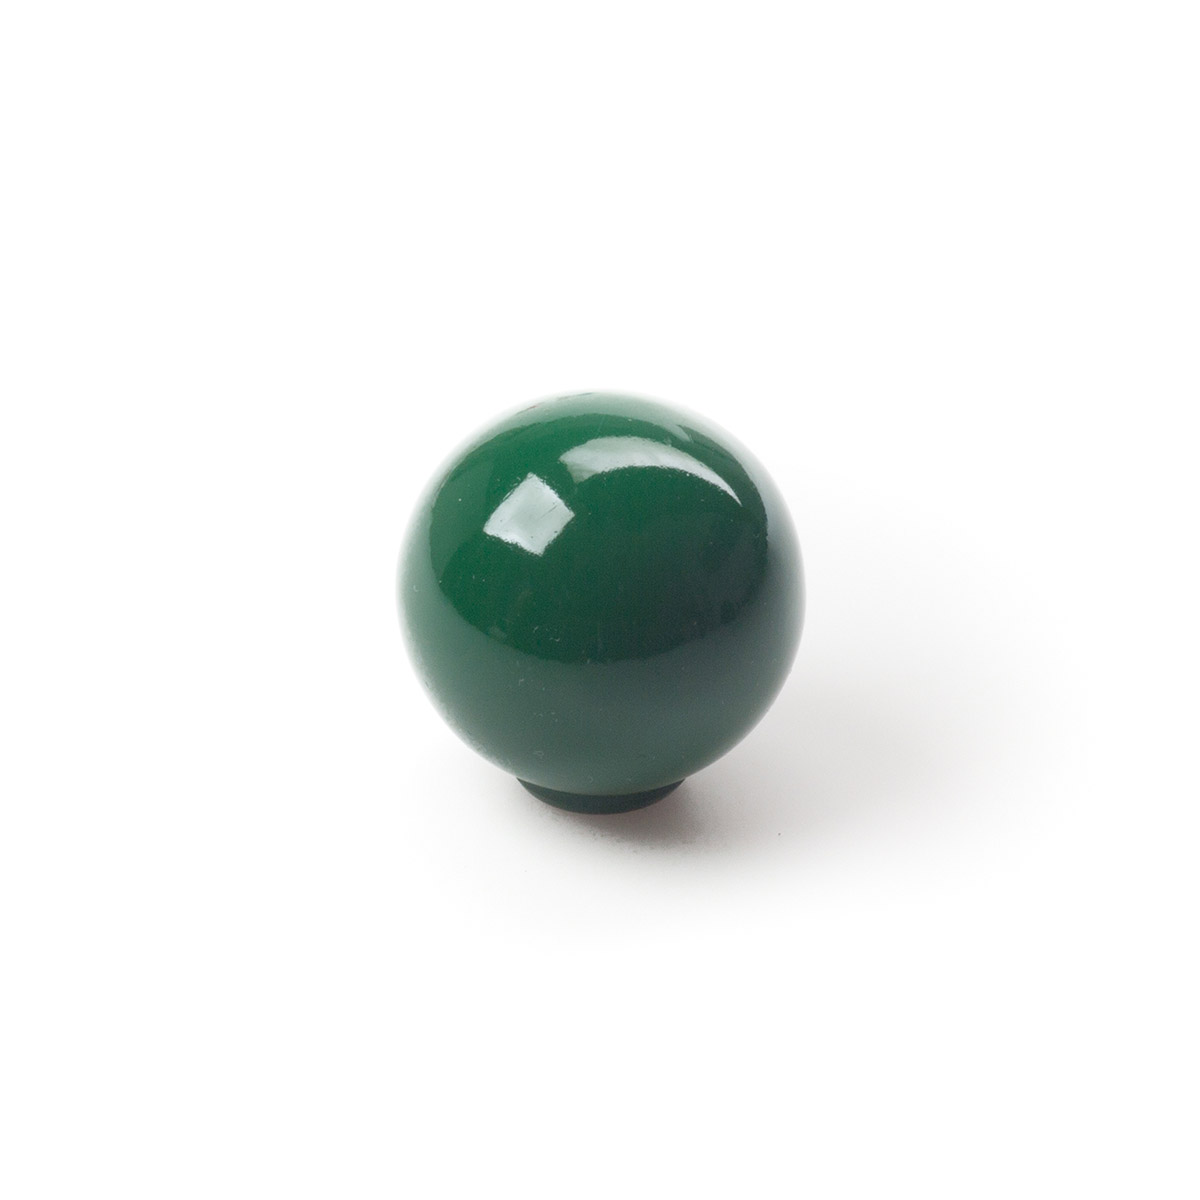 Sac avec 6 boutons en plastique avec finition verte, dimensions: 28x28x29mm Ø: 28mm